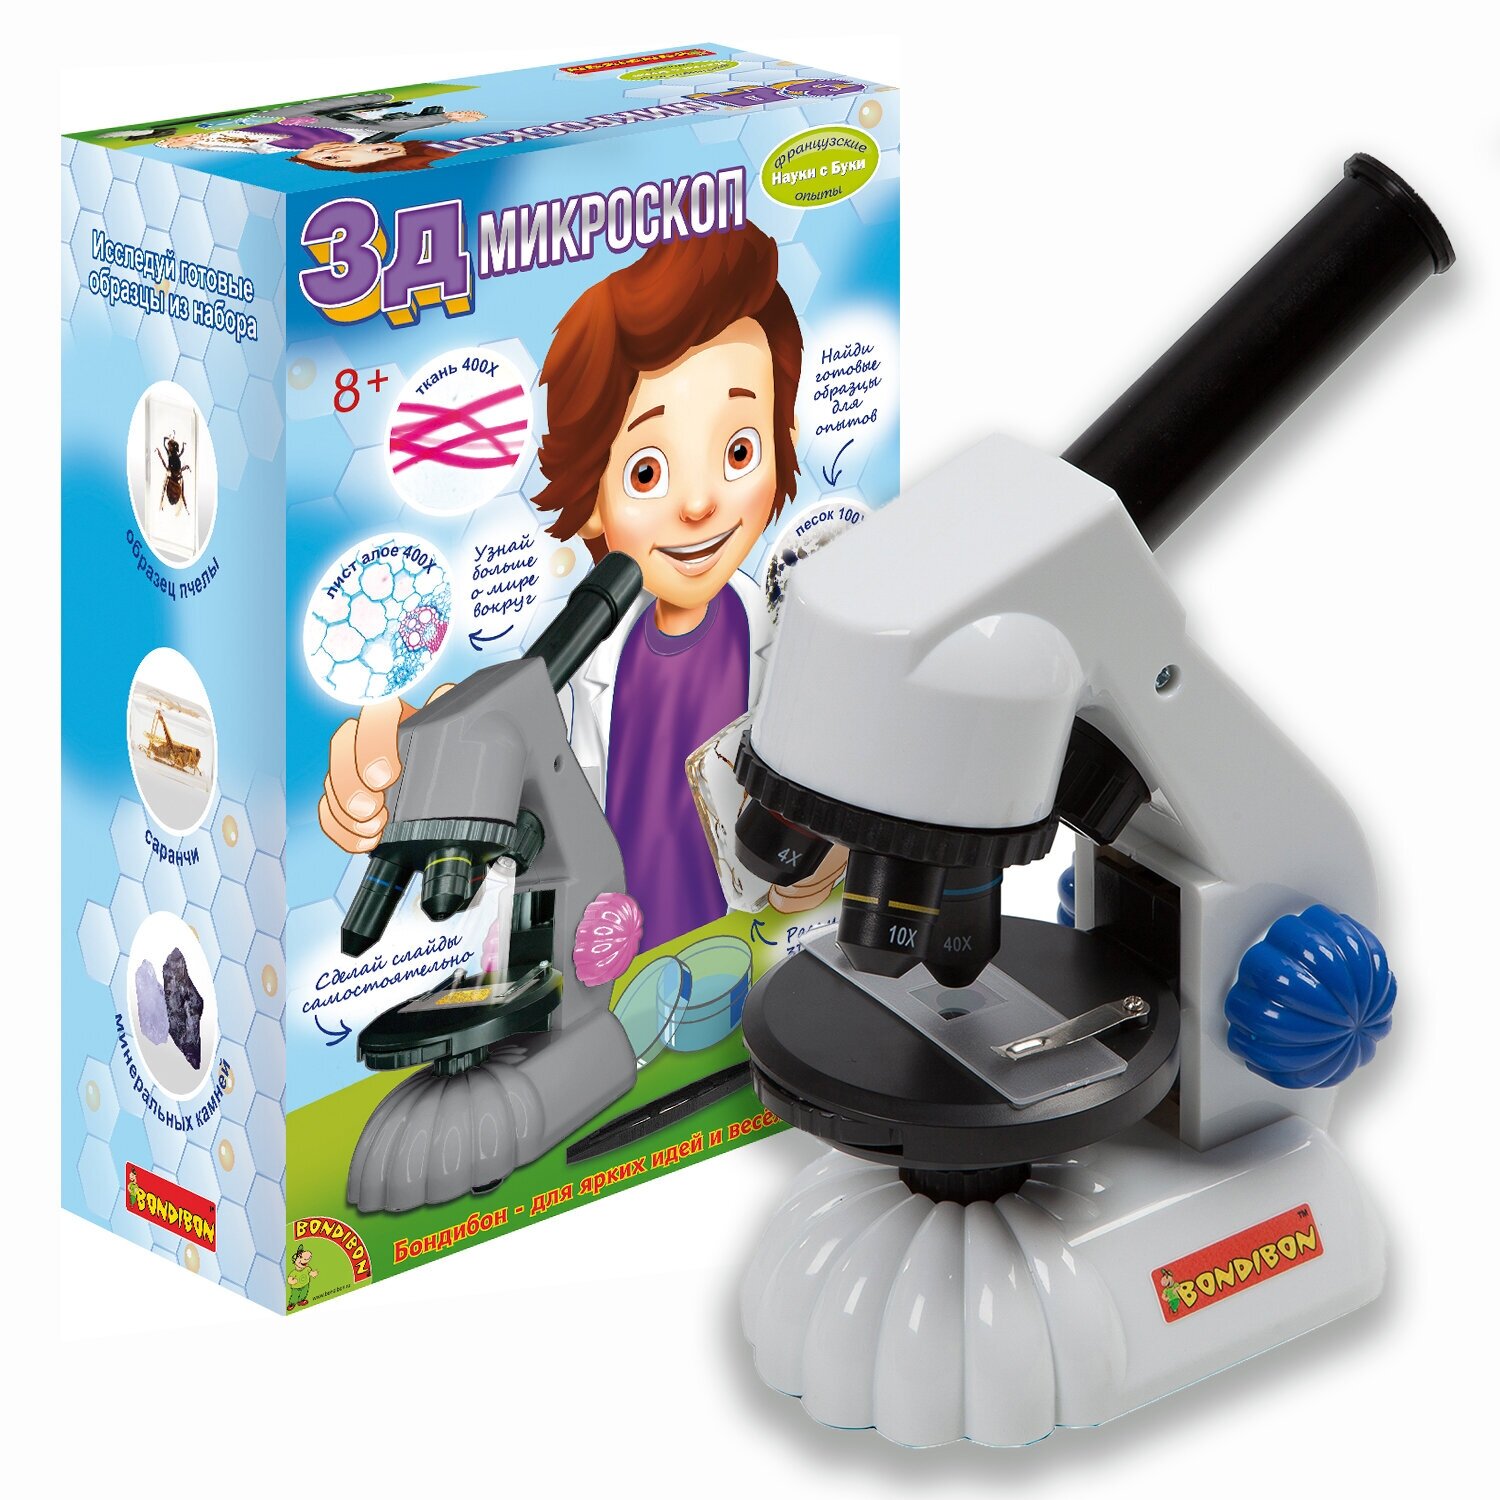 Микроскоп для детей школьный 3D 1200x с набором для исследований Bondibon Французские опыты Науки с Буки